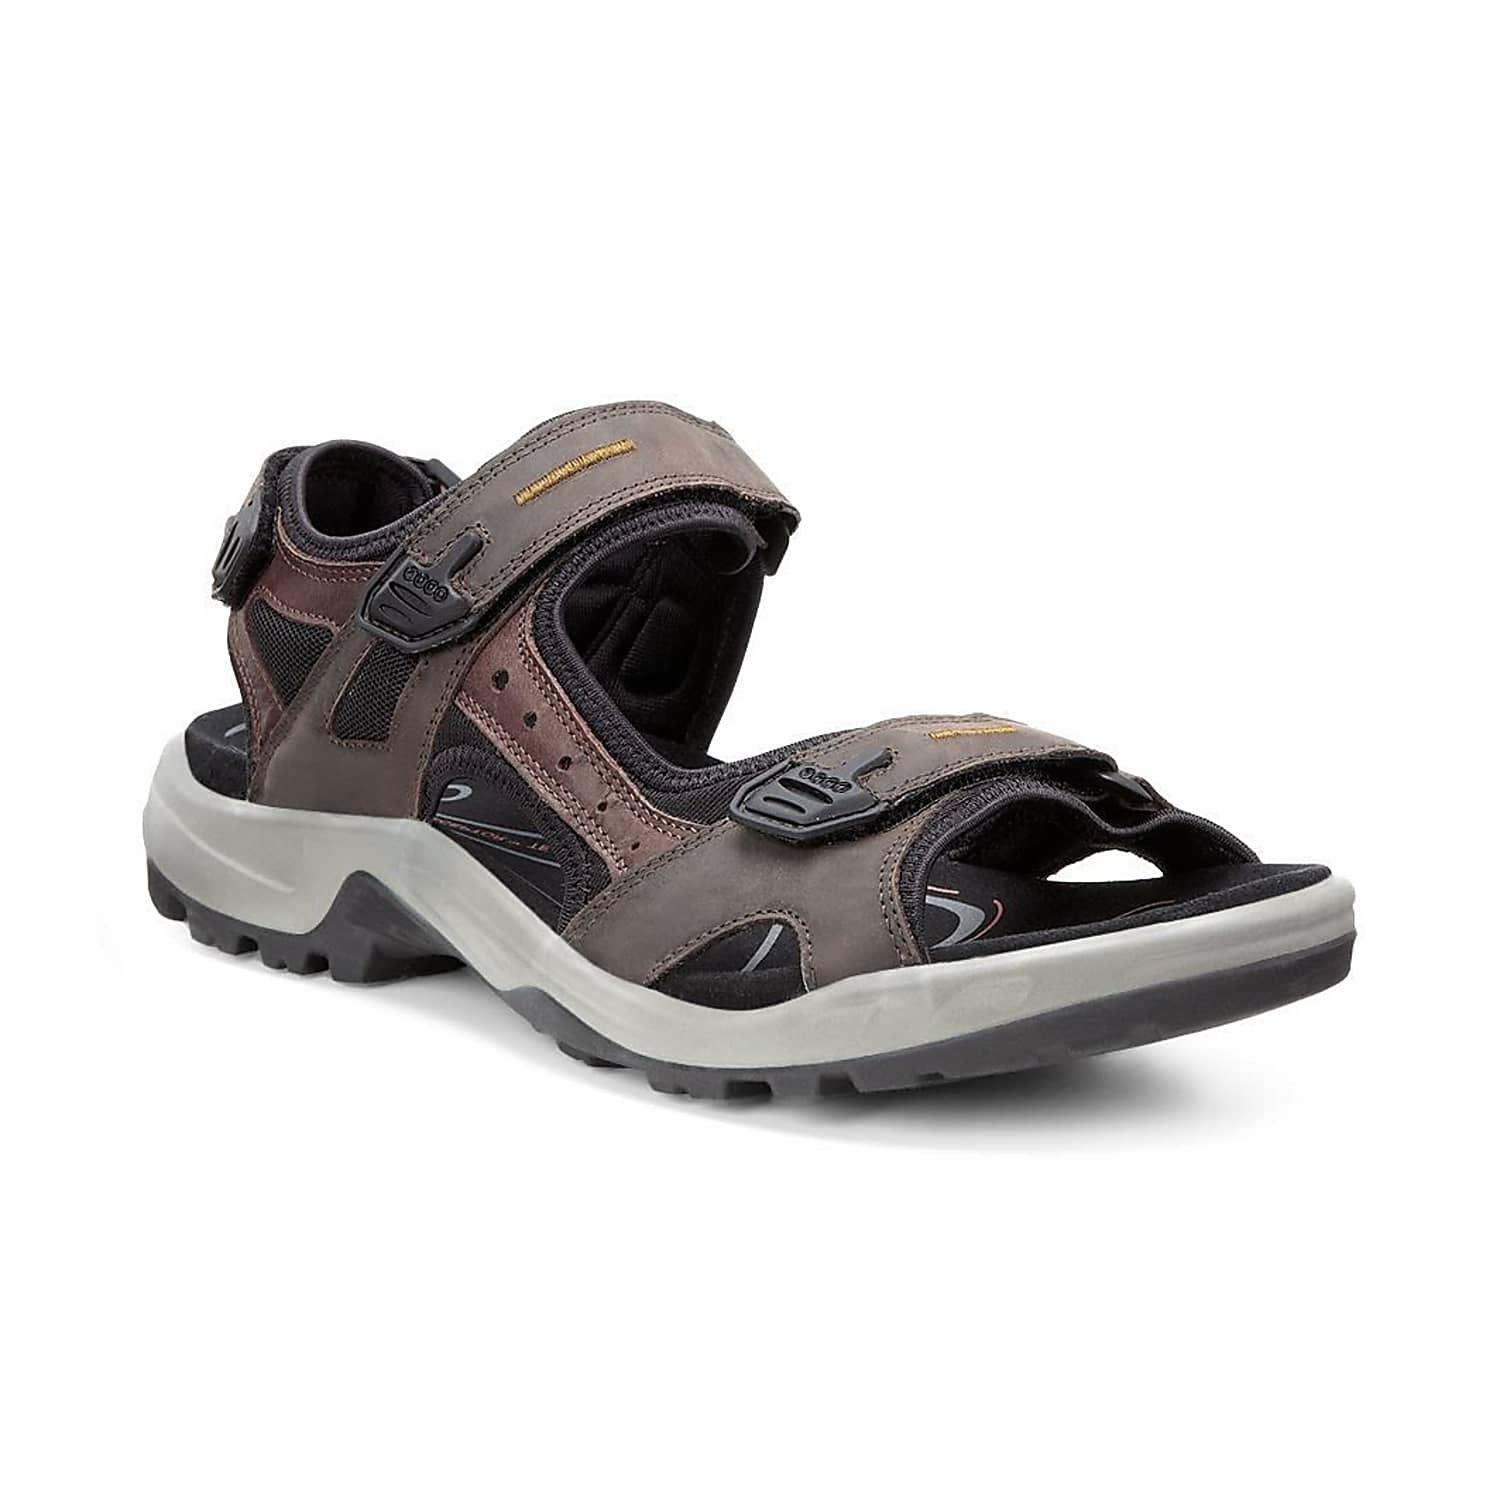 yucatan sandals on sale